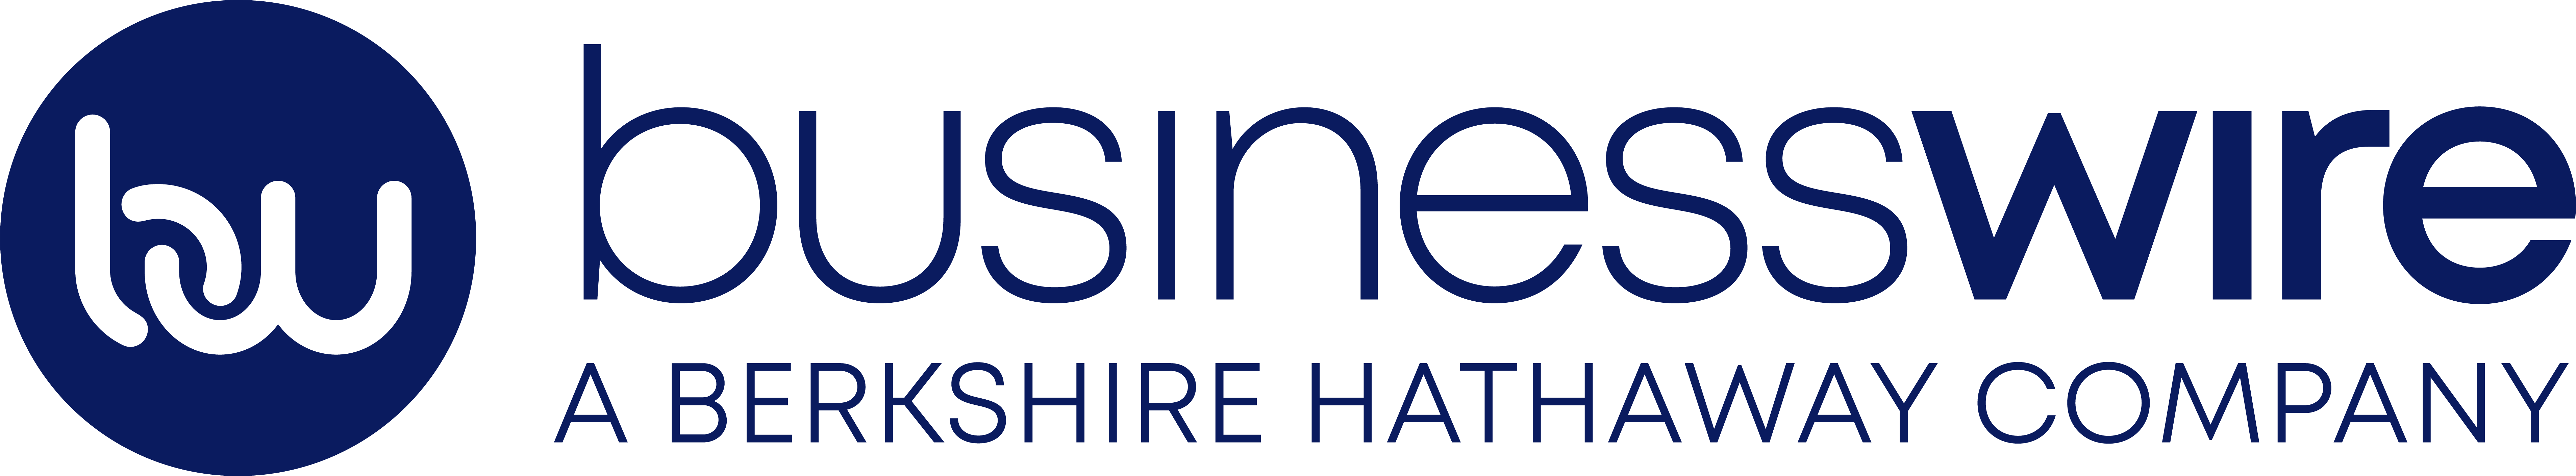 Business Wire logo logo